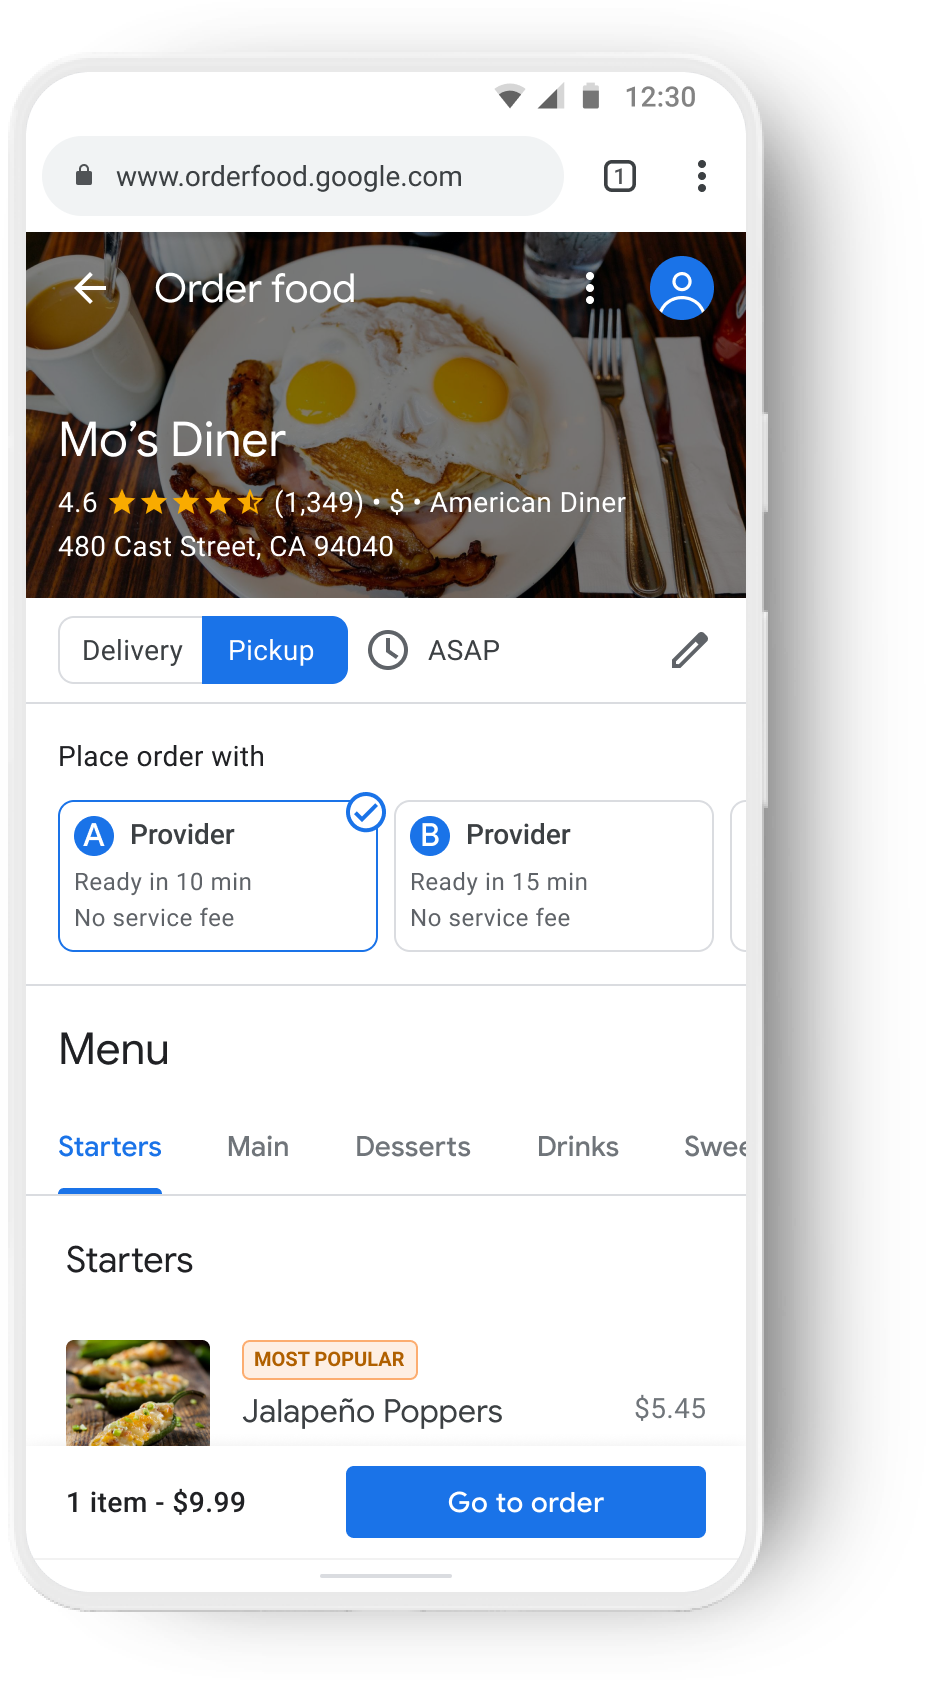 ورود تلفن همراه برای یک رستوران که توسط دو ارائه دهنده خدمات تحویل مختلف دنبال می شود.